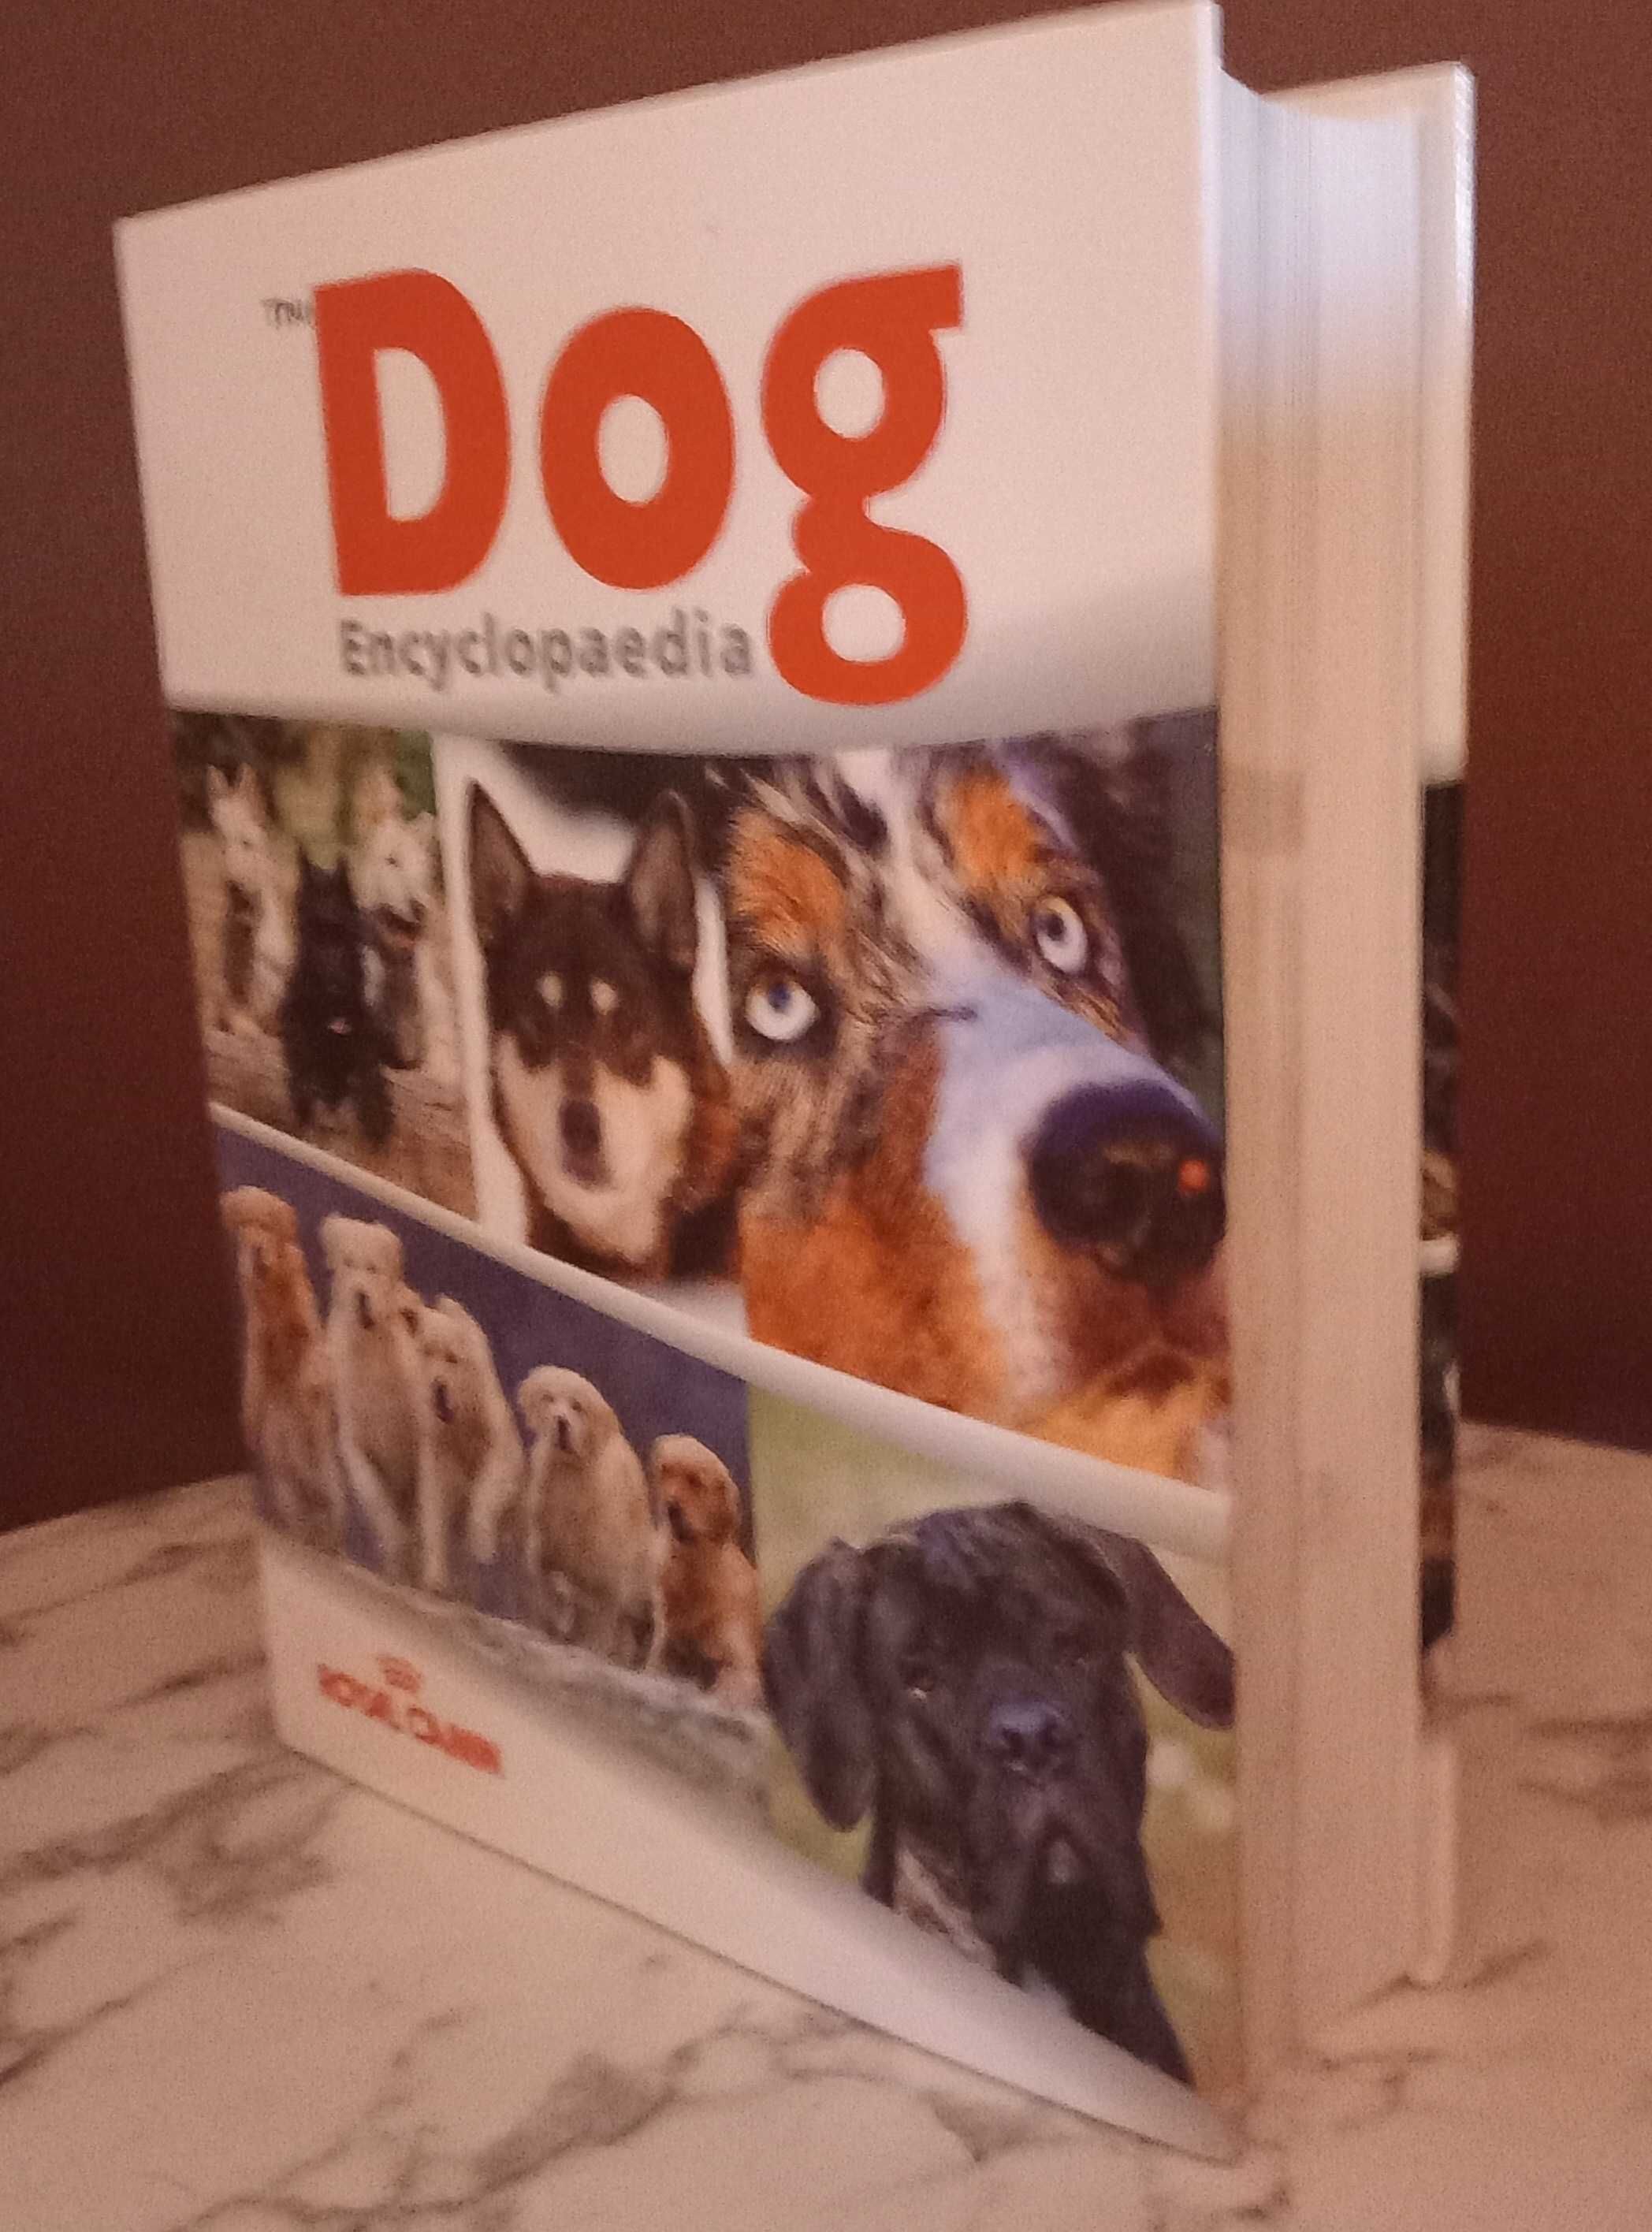 Encyklopedia psów